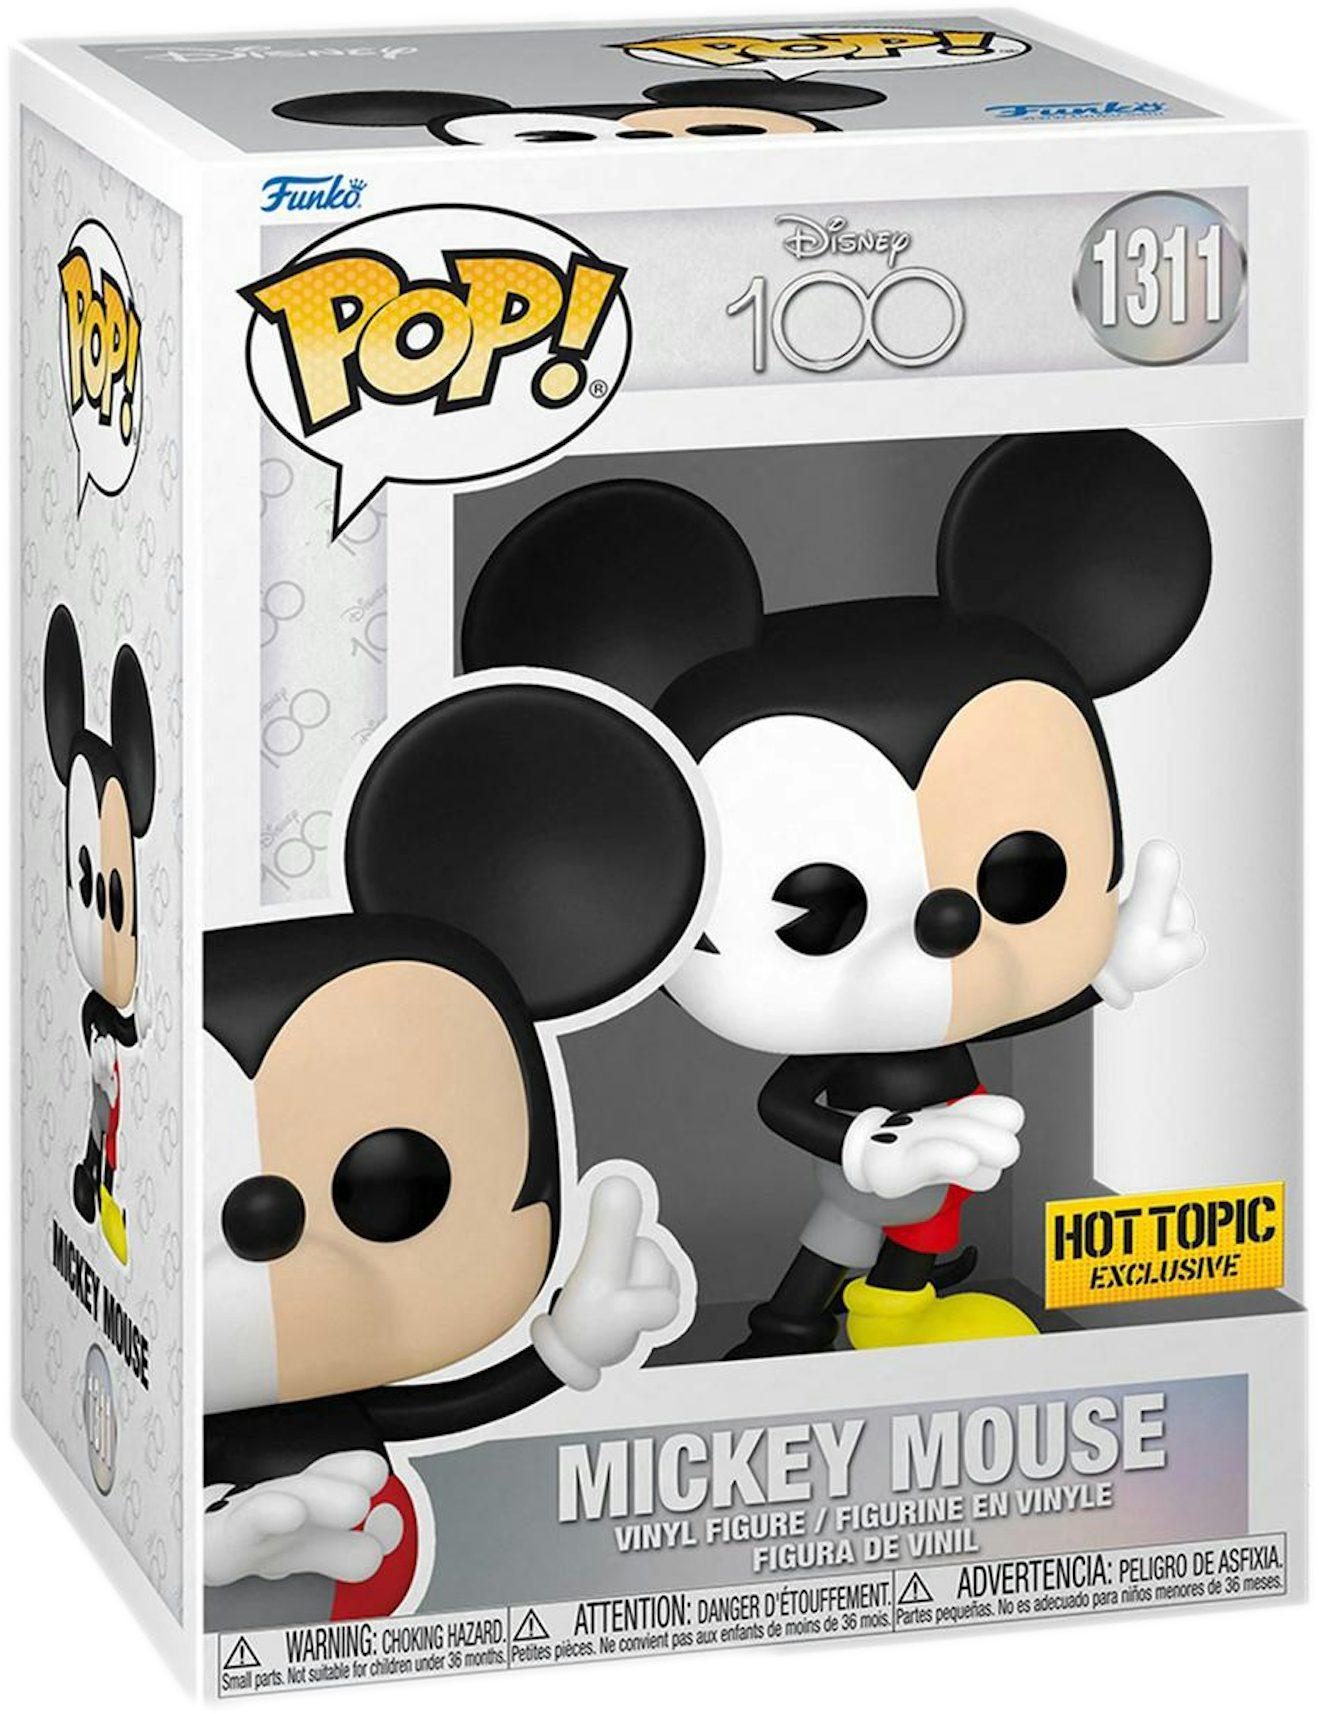 Funko Pop! Disney: Holiday - Mickey & Minnie with Friends - Bundle (Se